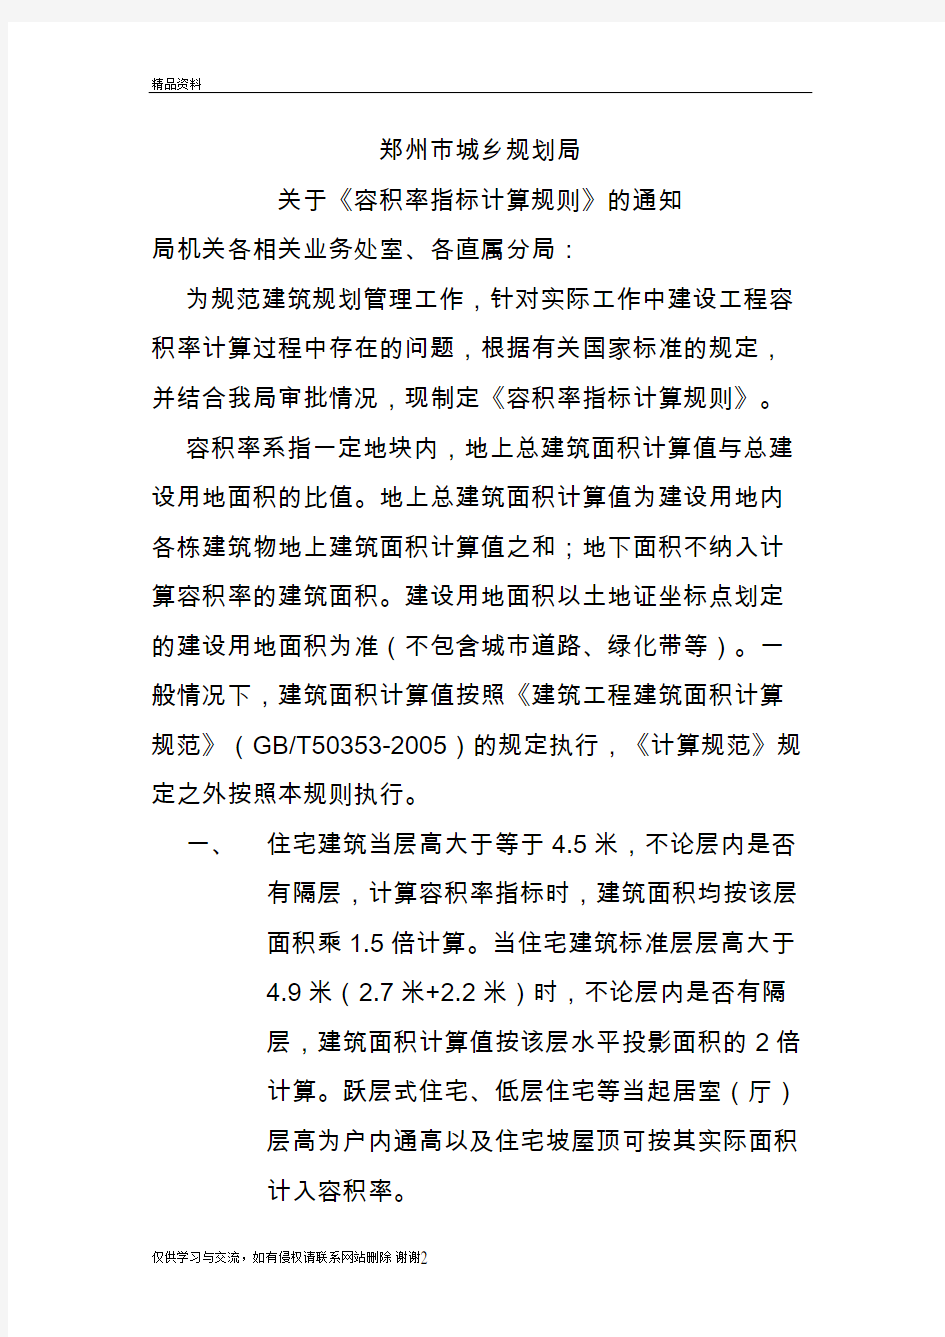 最新34郑州容积率指标计算规则汇总